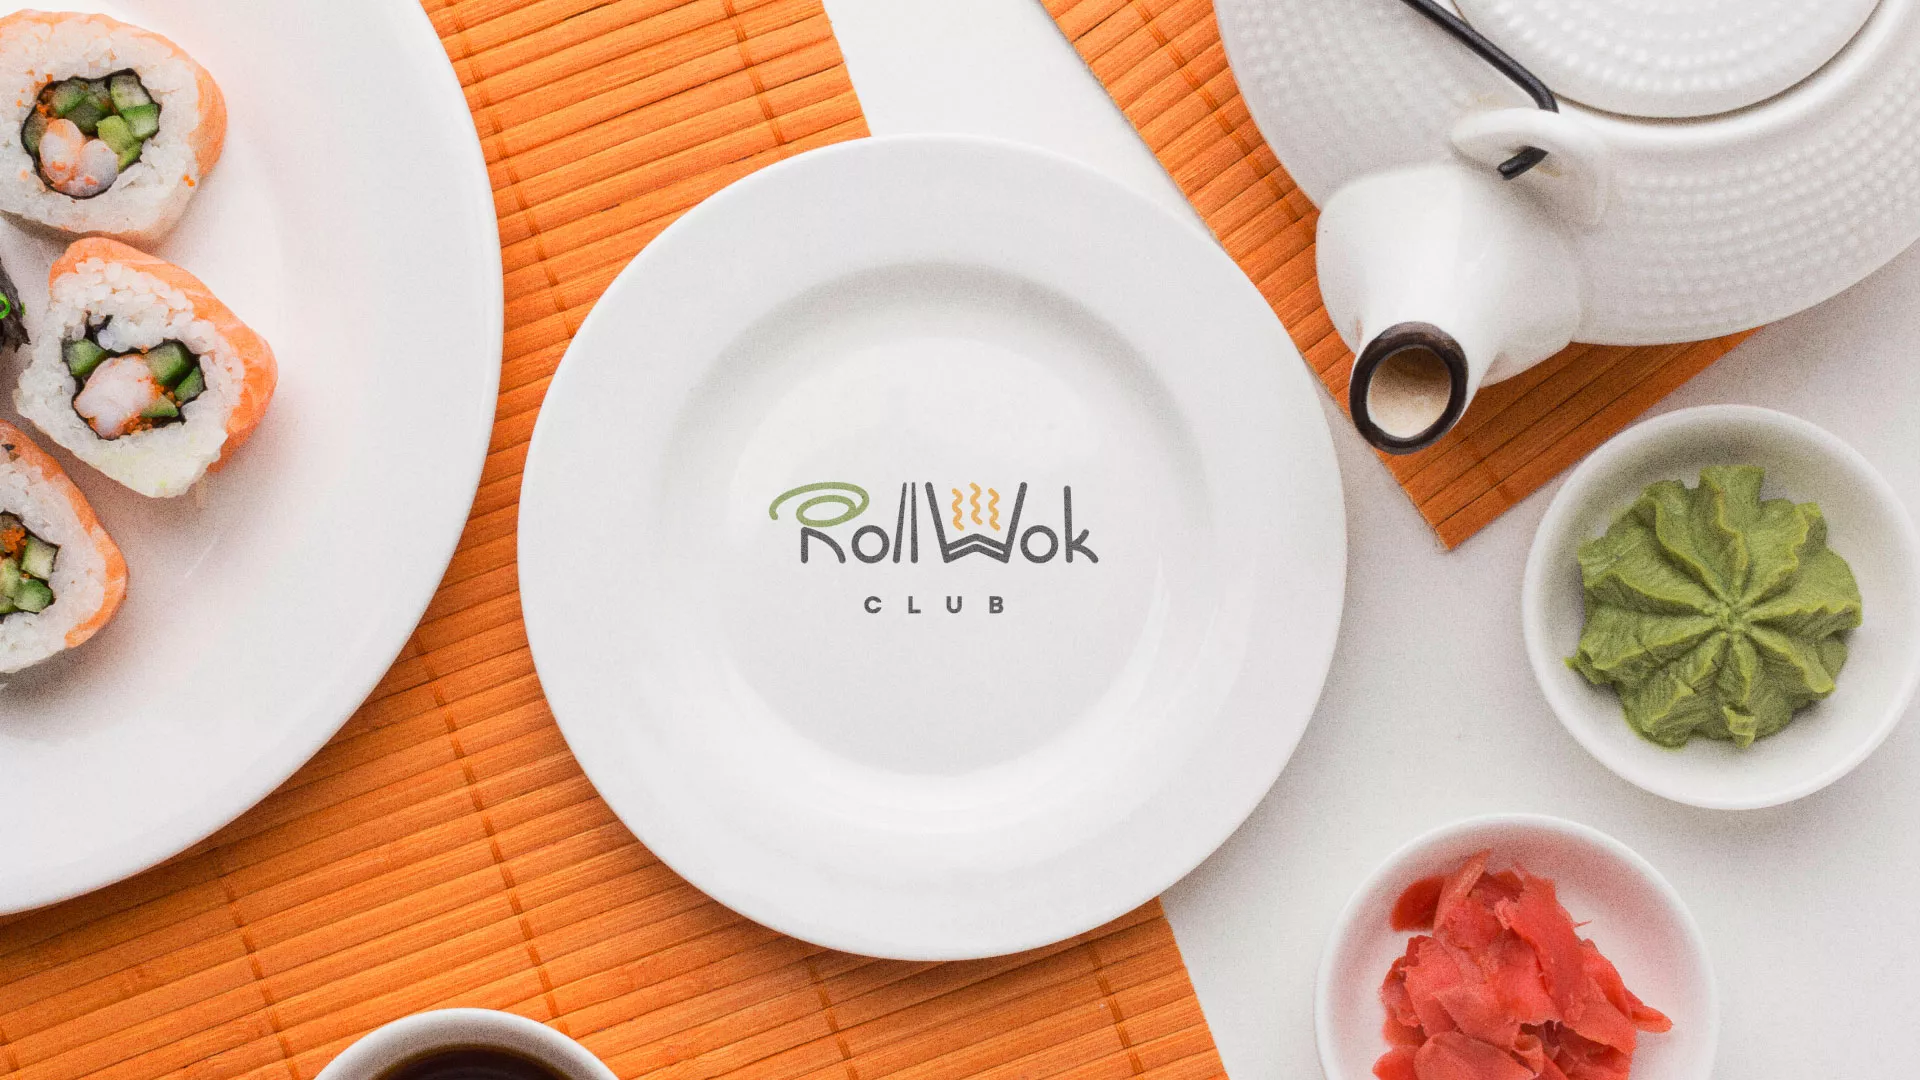 Разработка логотипа и фирменного стиля суши-бара «Roll Wok Club» в Касимове